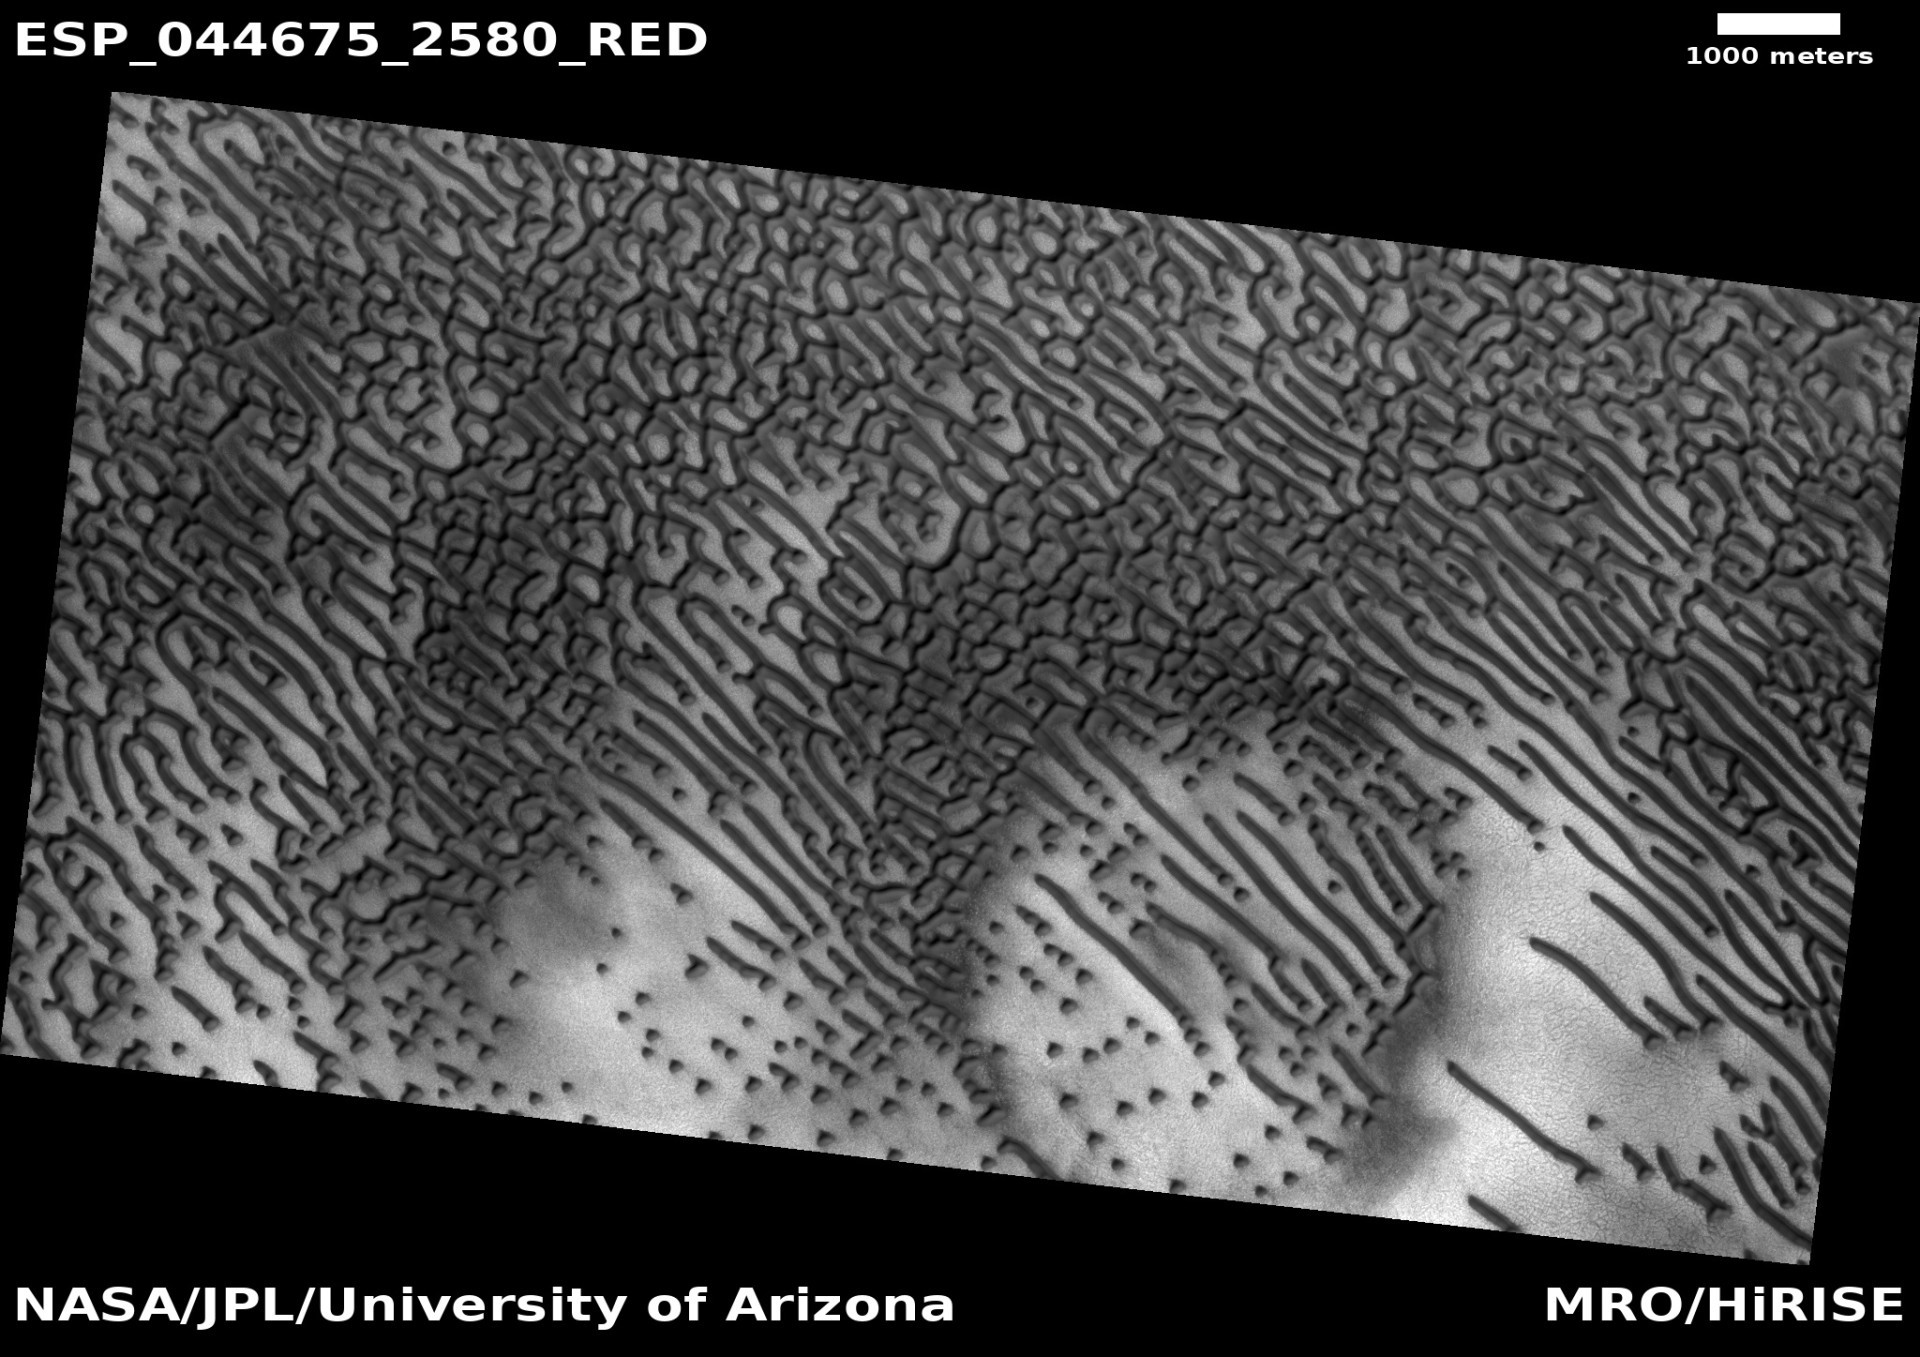 Азбука Морзе на марсианских дюнах - 3